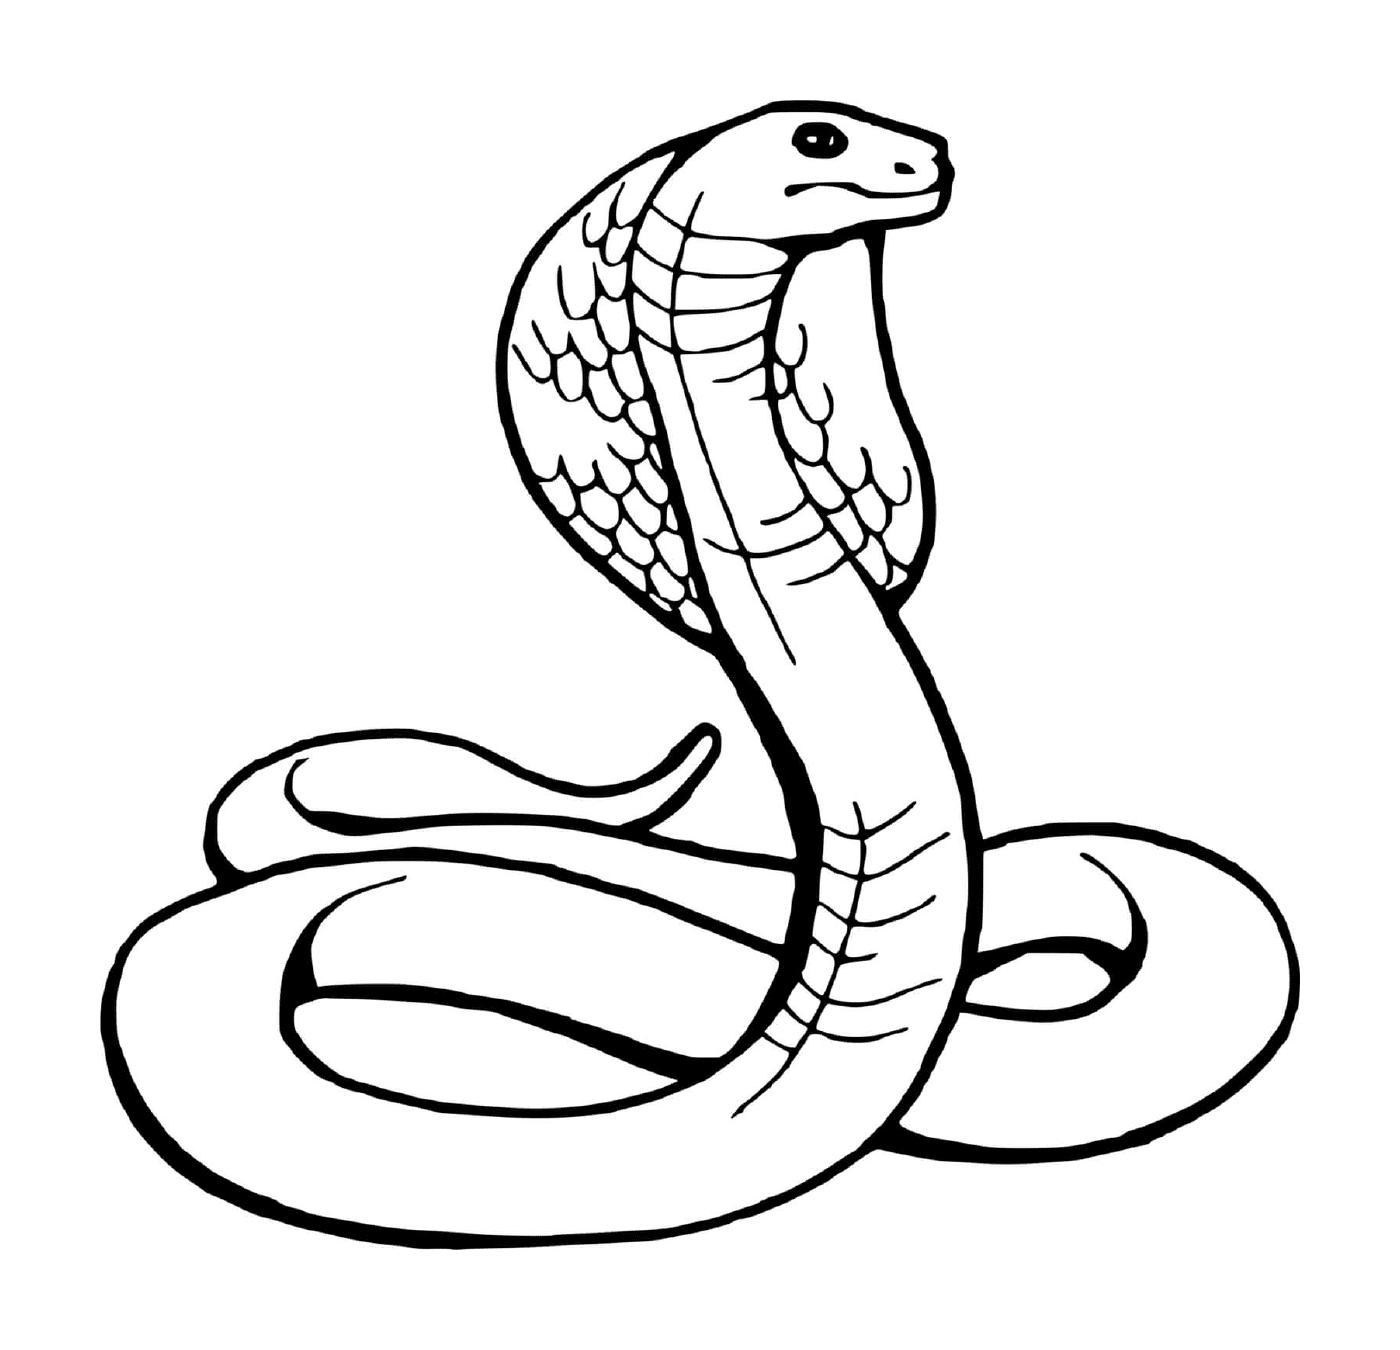 serpent snake